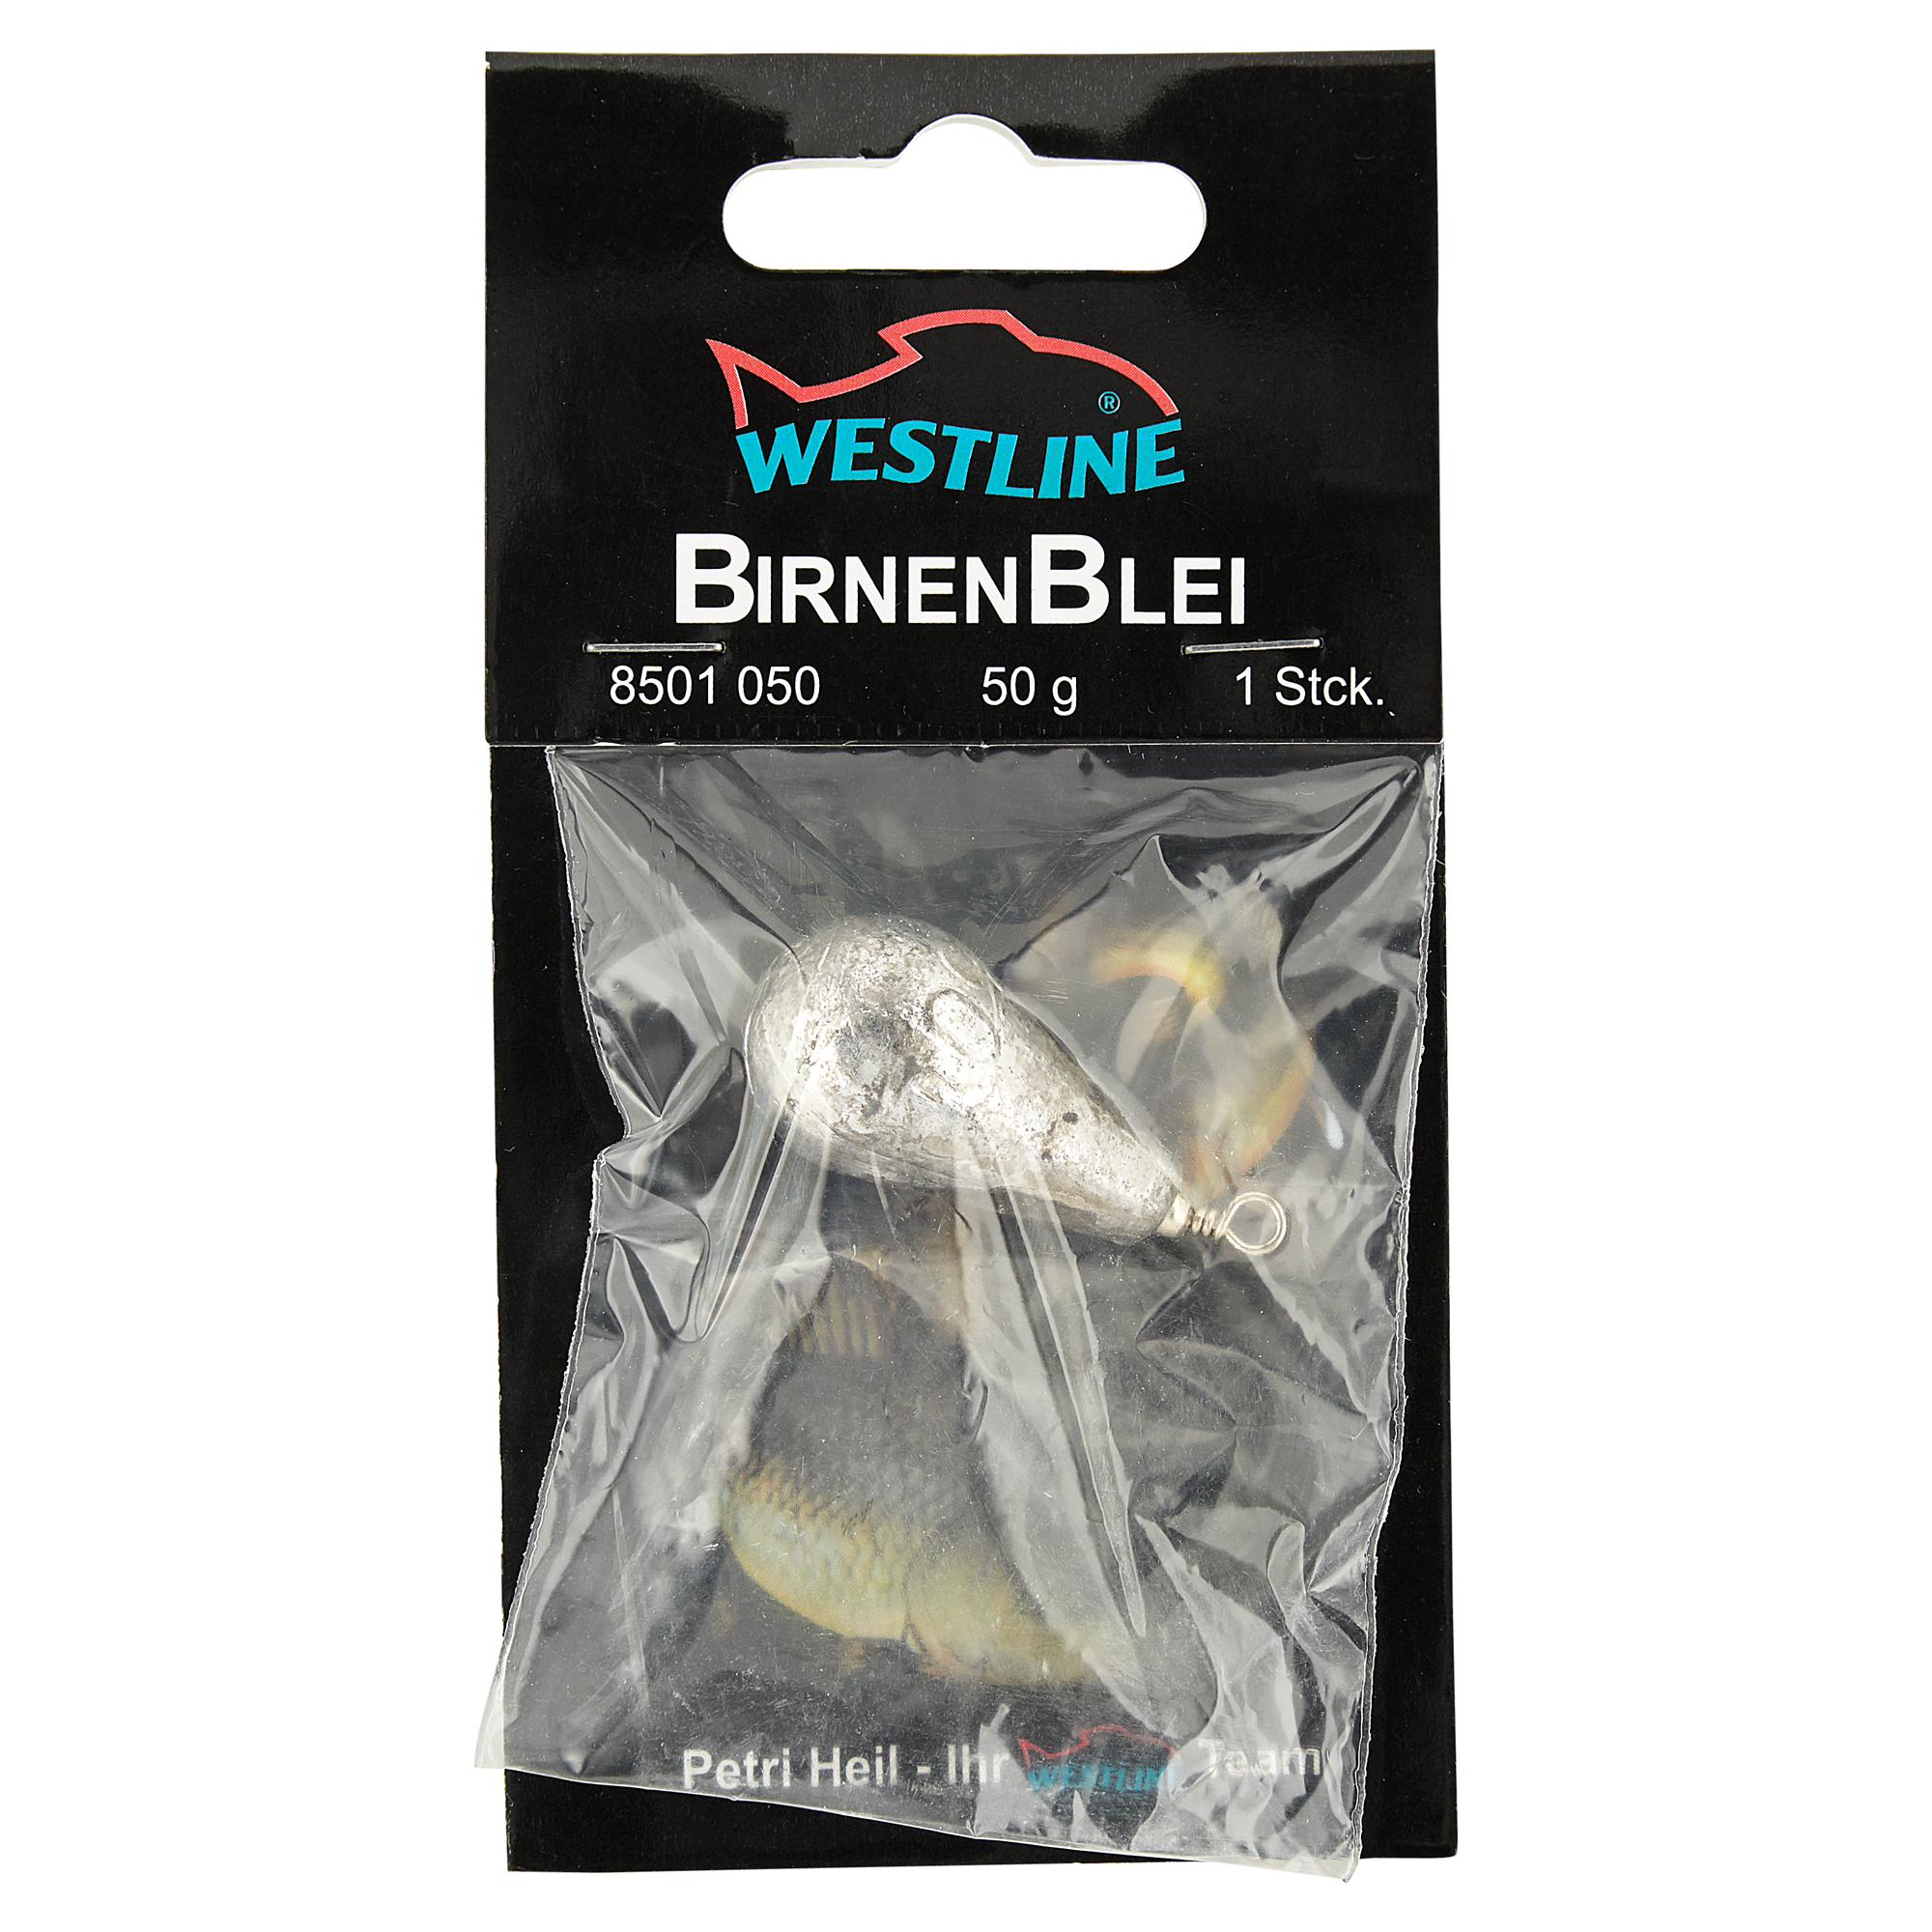 Birnenbleie mit Wirbel 50 g + product picture